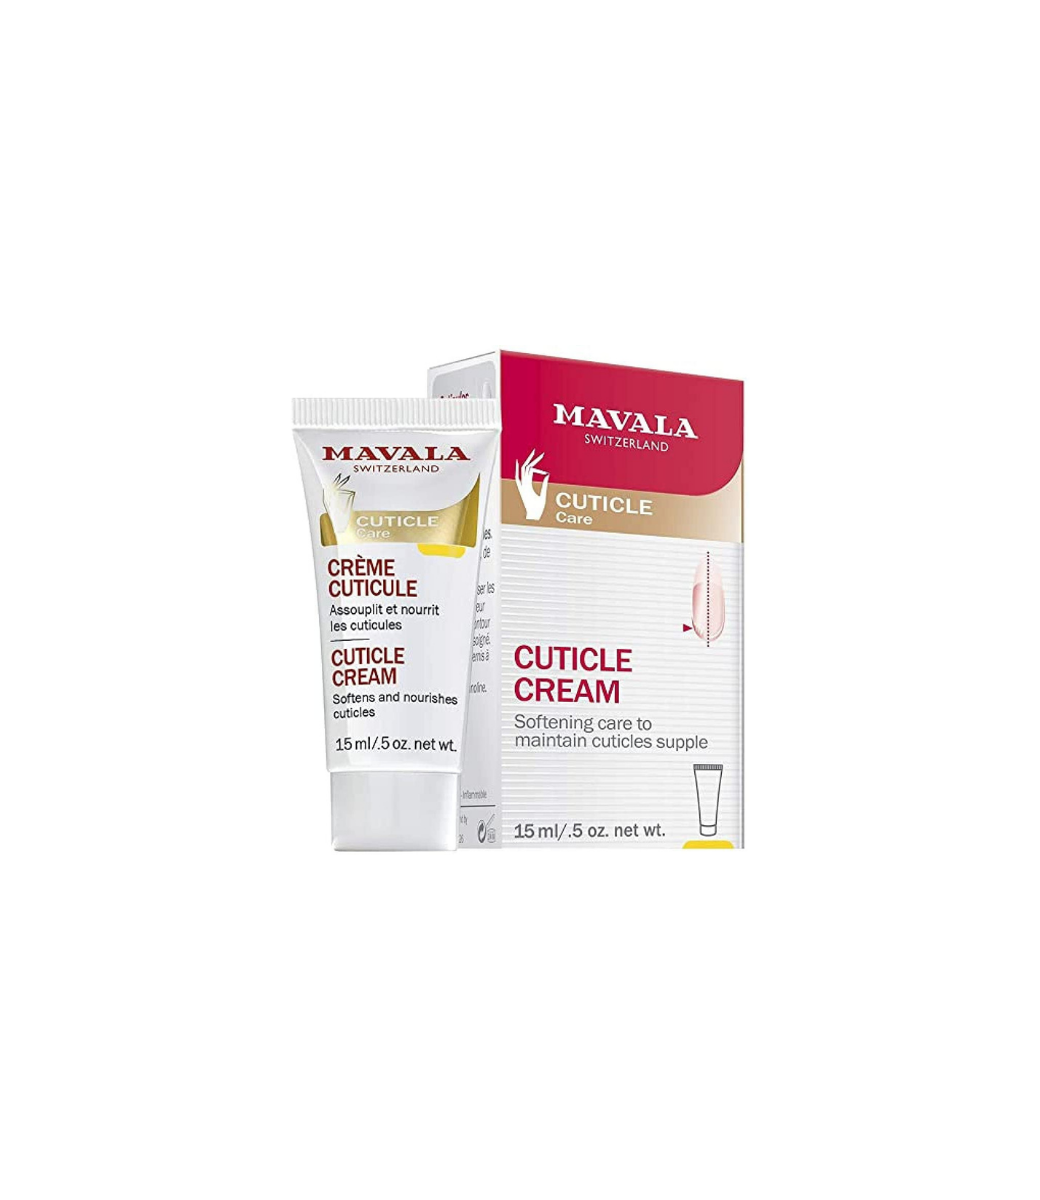 MAVALA MAVALA - Cuticle Cream, 0.5oz - 91412